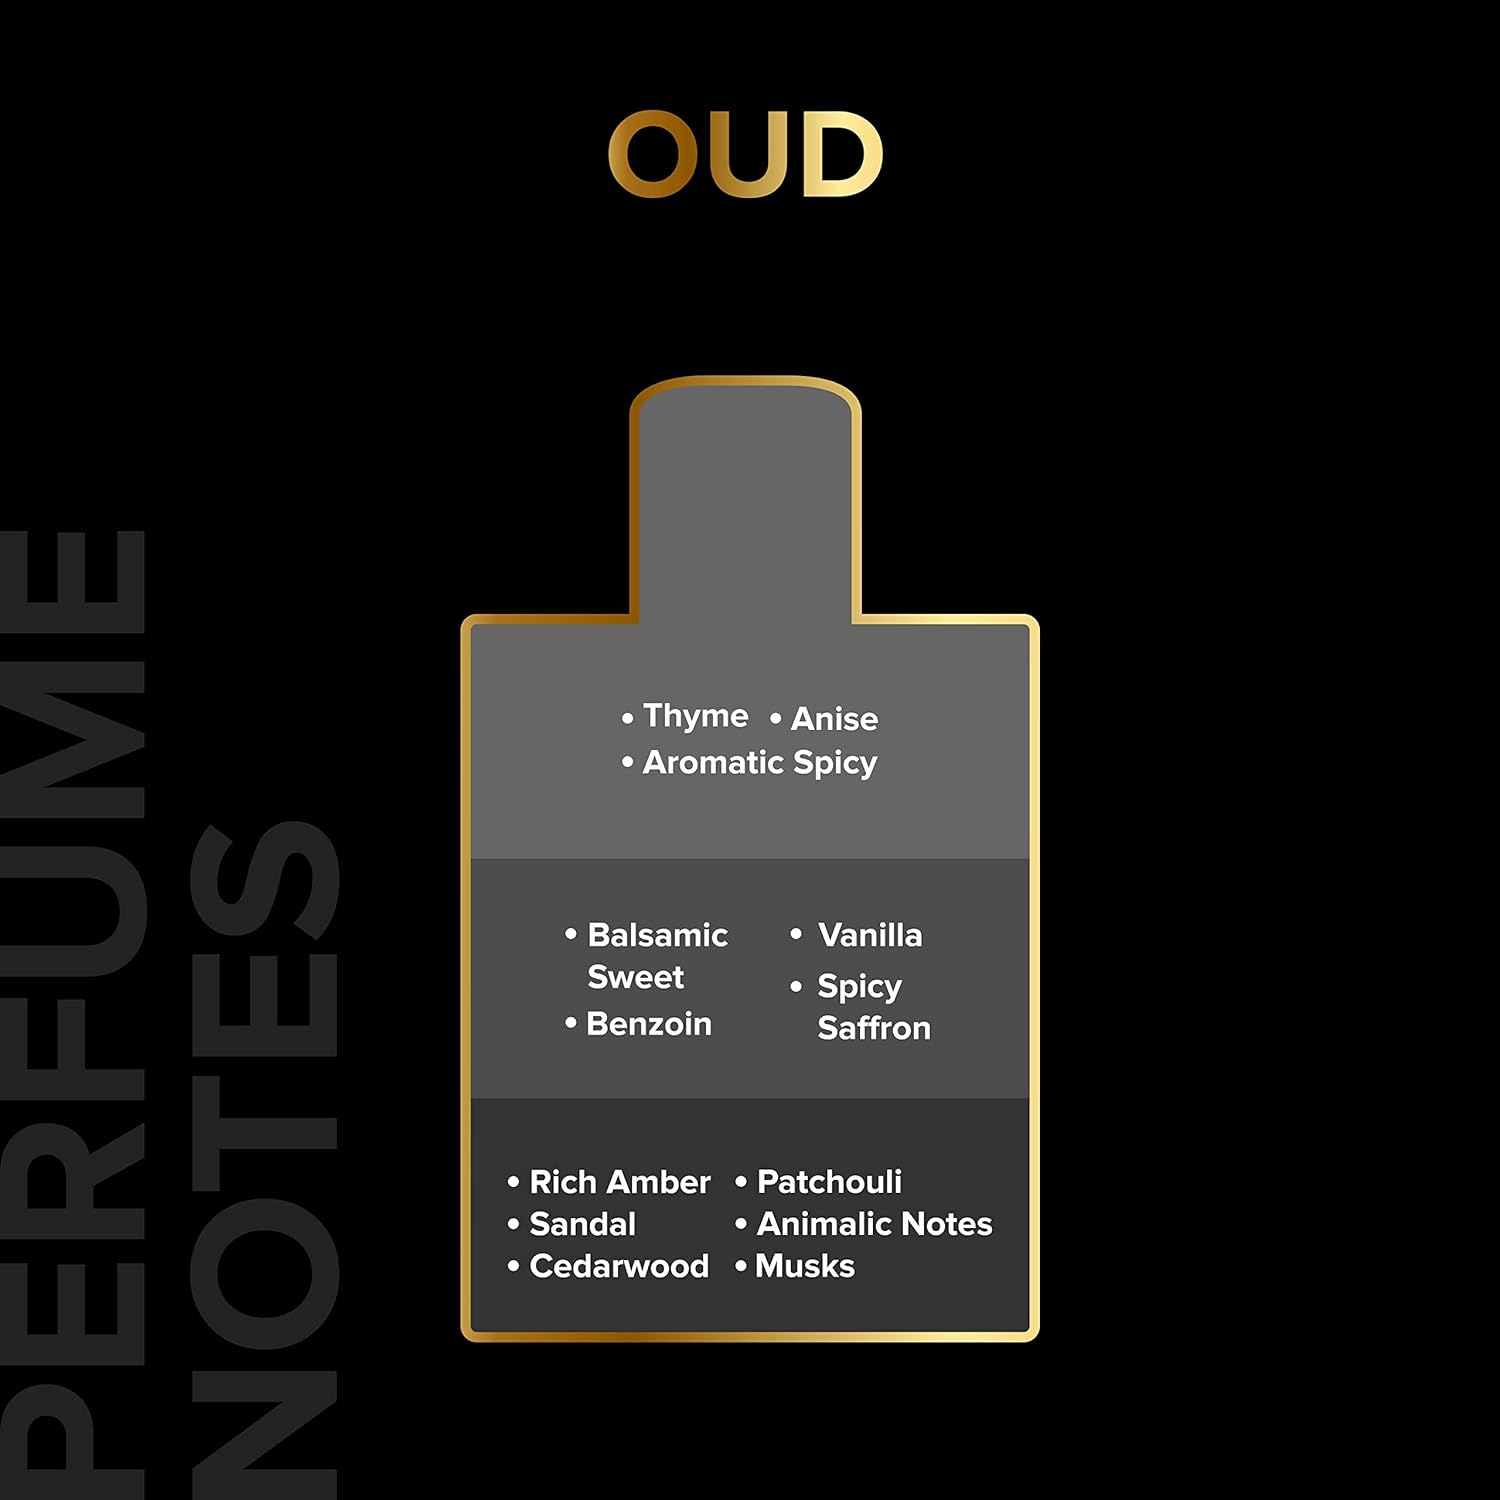 VILLAIN OUD Eau De Parfum For Men, 100ml | Premium Luxury Perfume | Long Lasting Fragrance